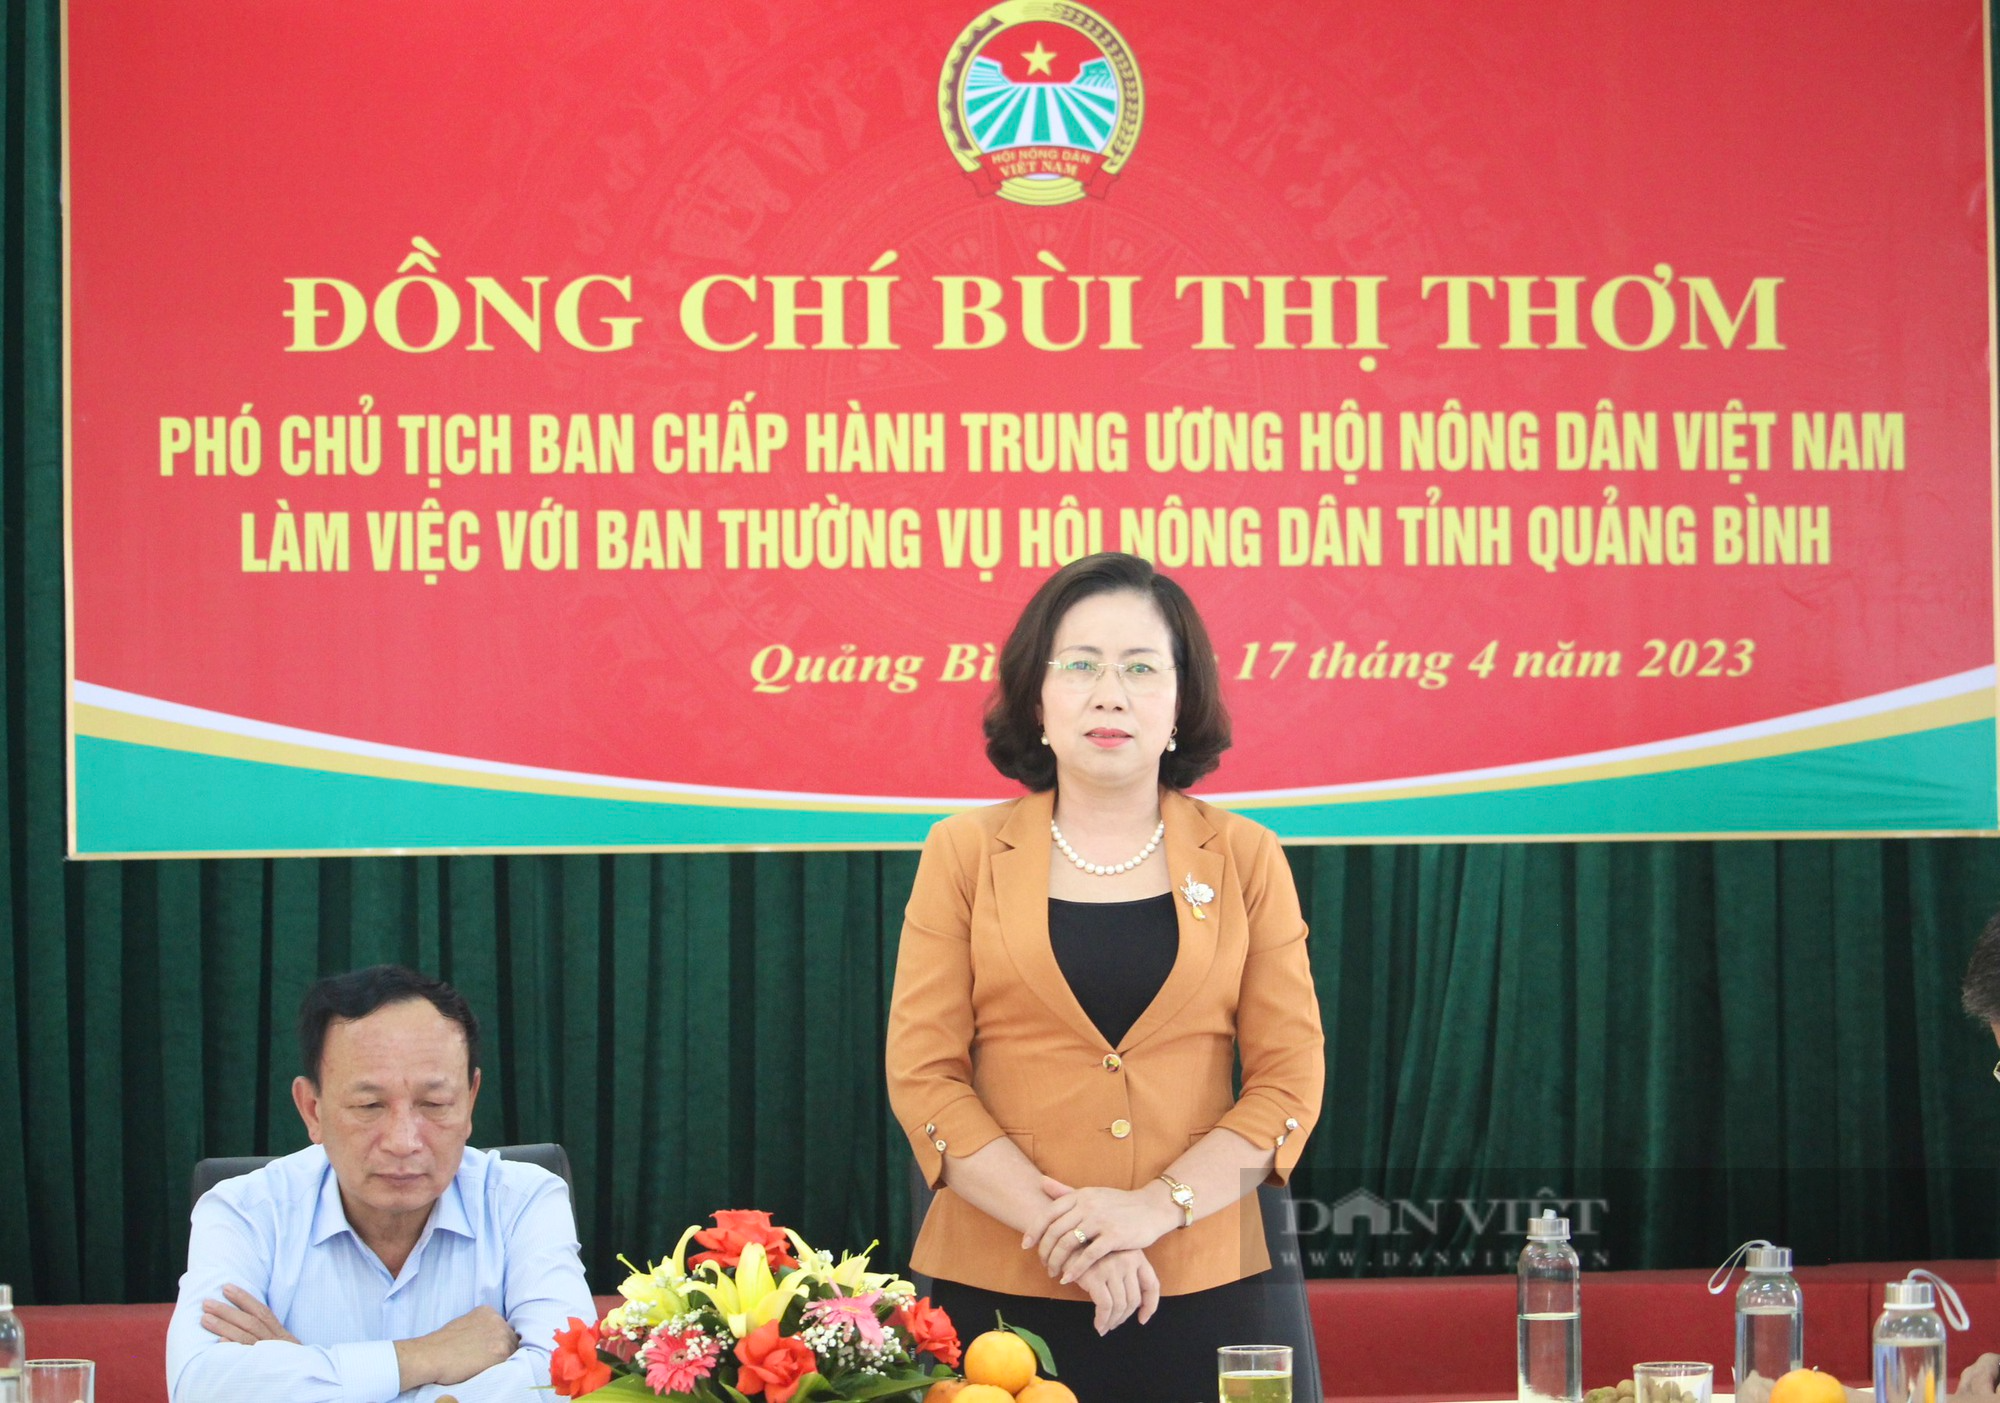 Phó Chủ tịch Trung ương Hội NDVN Bùi Thị Thơm: Cần có những đề án xây dựng các mô hình sản xuất dài hơi - Ảnh 2.